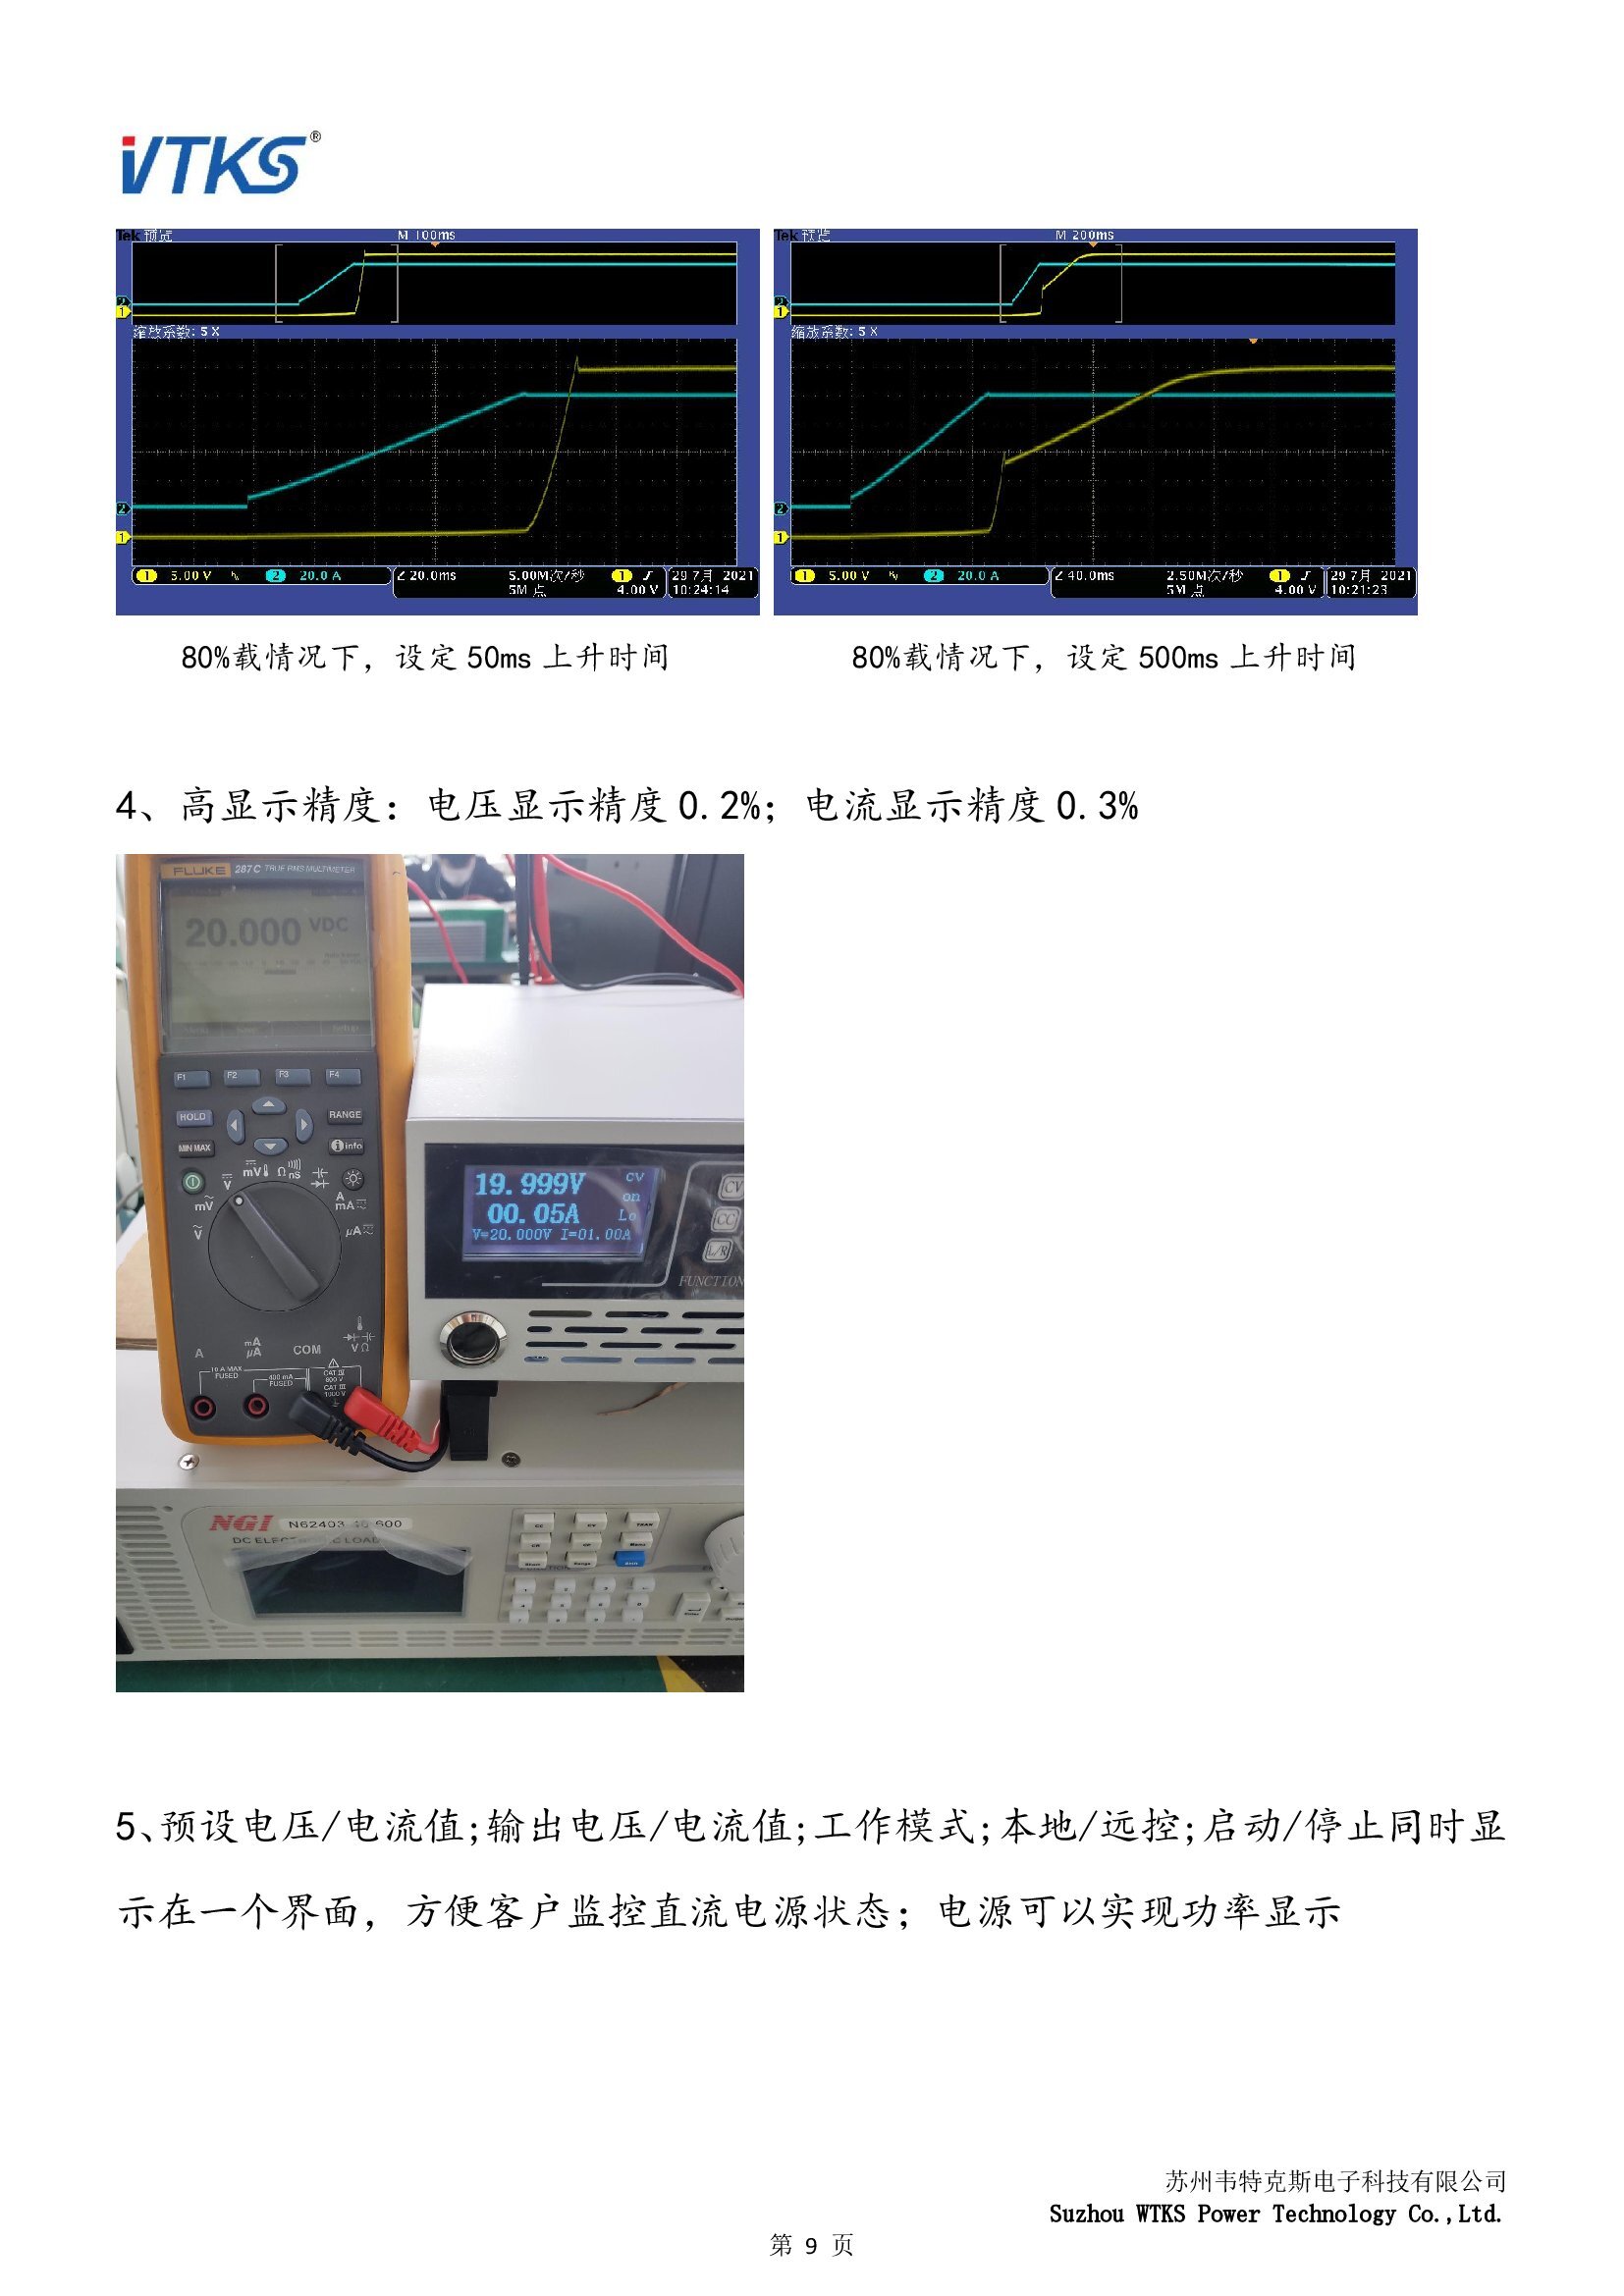 WSD-6KW系列数字直流电源技术资料_V1.06_00009.jpg